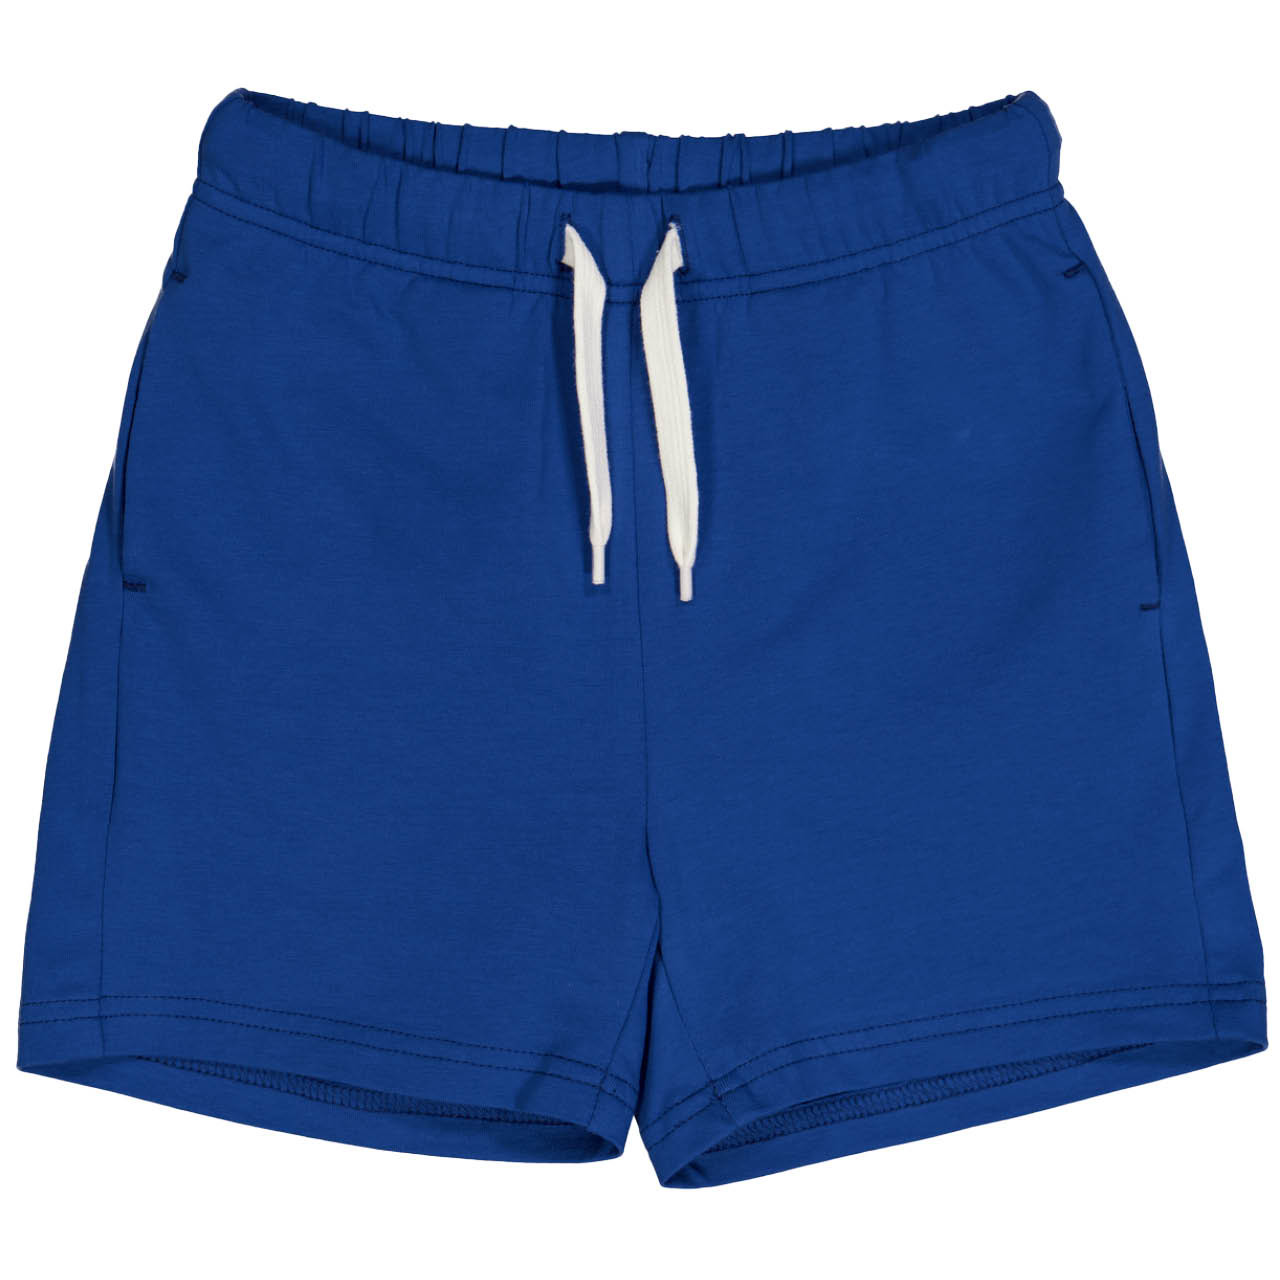 Weite Jersey Shorts uni blau